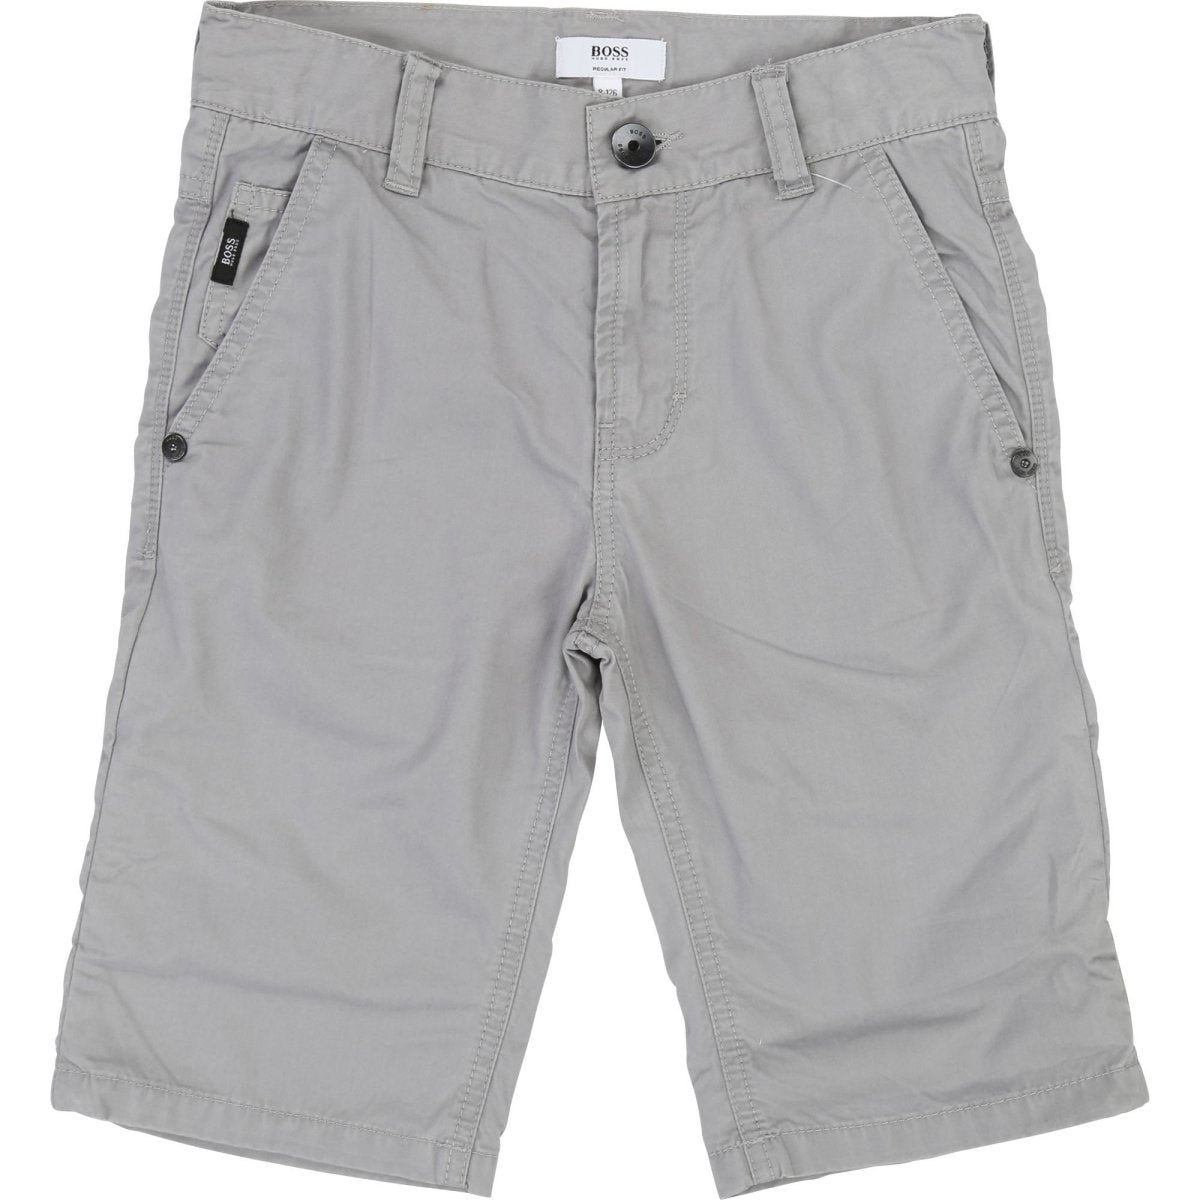 Hugo Boss Boys Bermuda Shorts J24598 Shorts Hugo Boss Medium Grey 10 